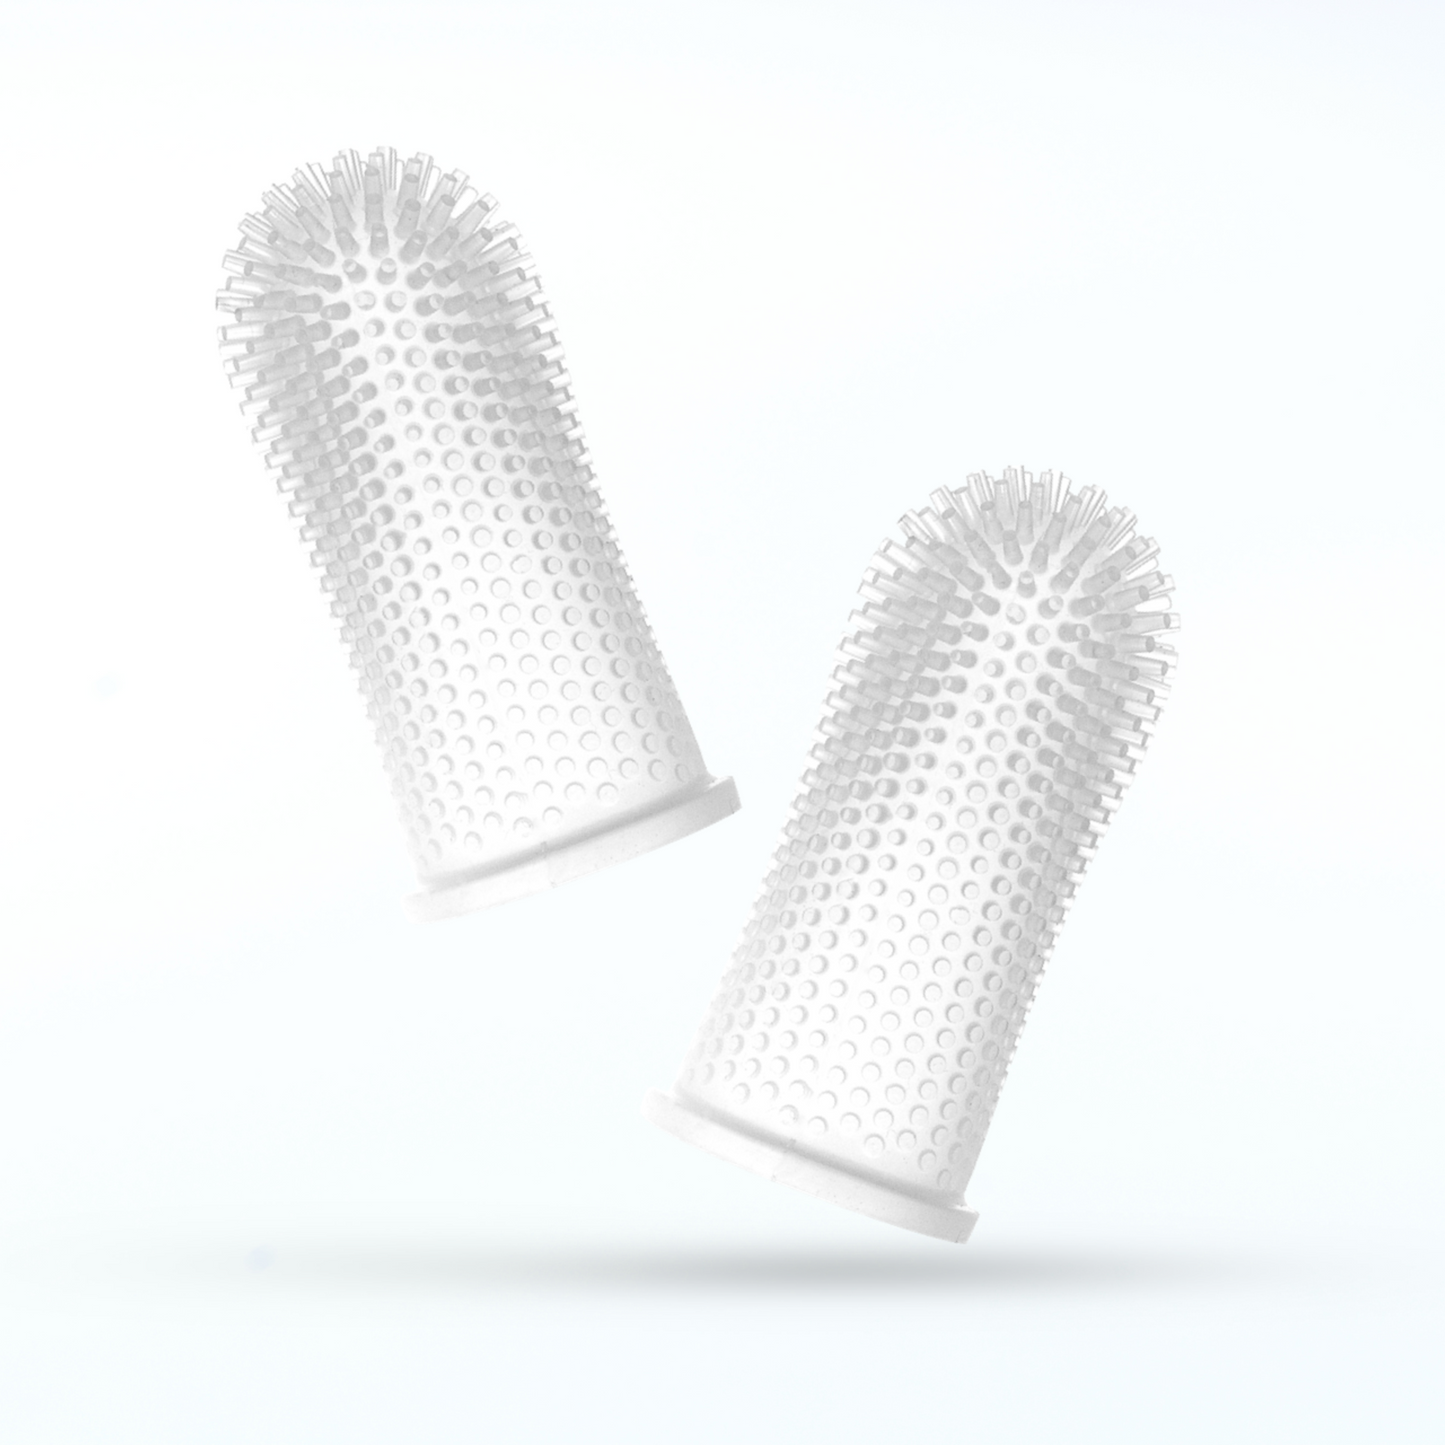 Jasper® 360º Pet Finger Toothbrush, 2-Pack Clear